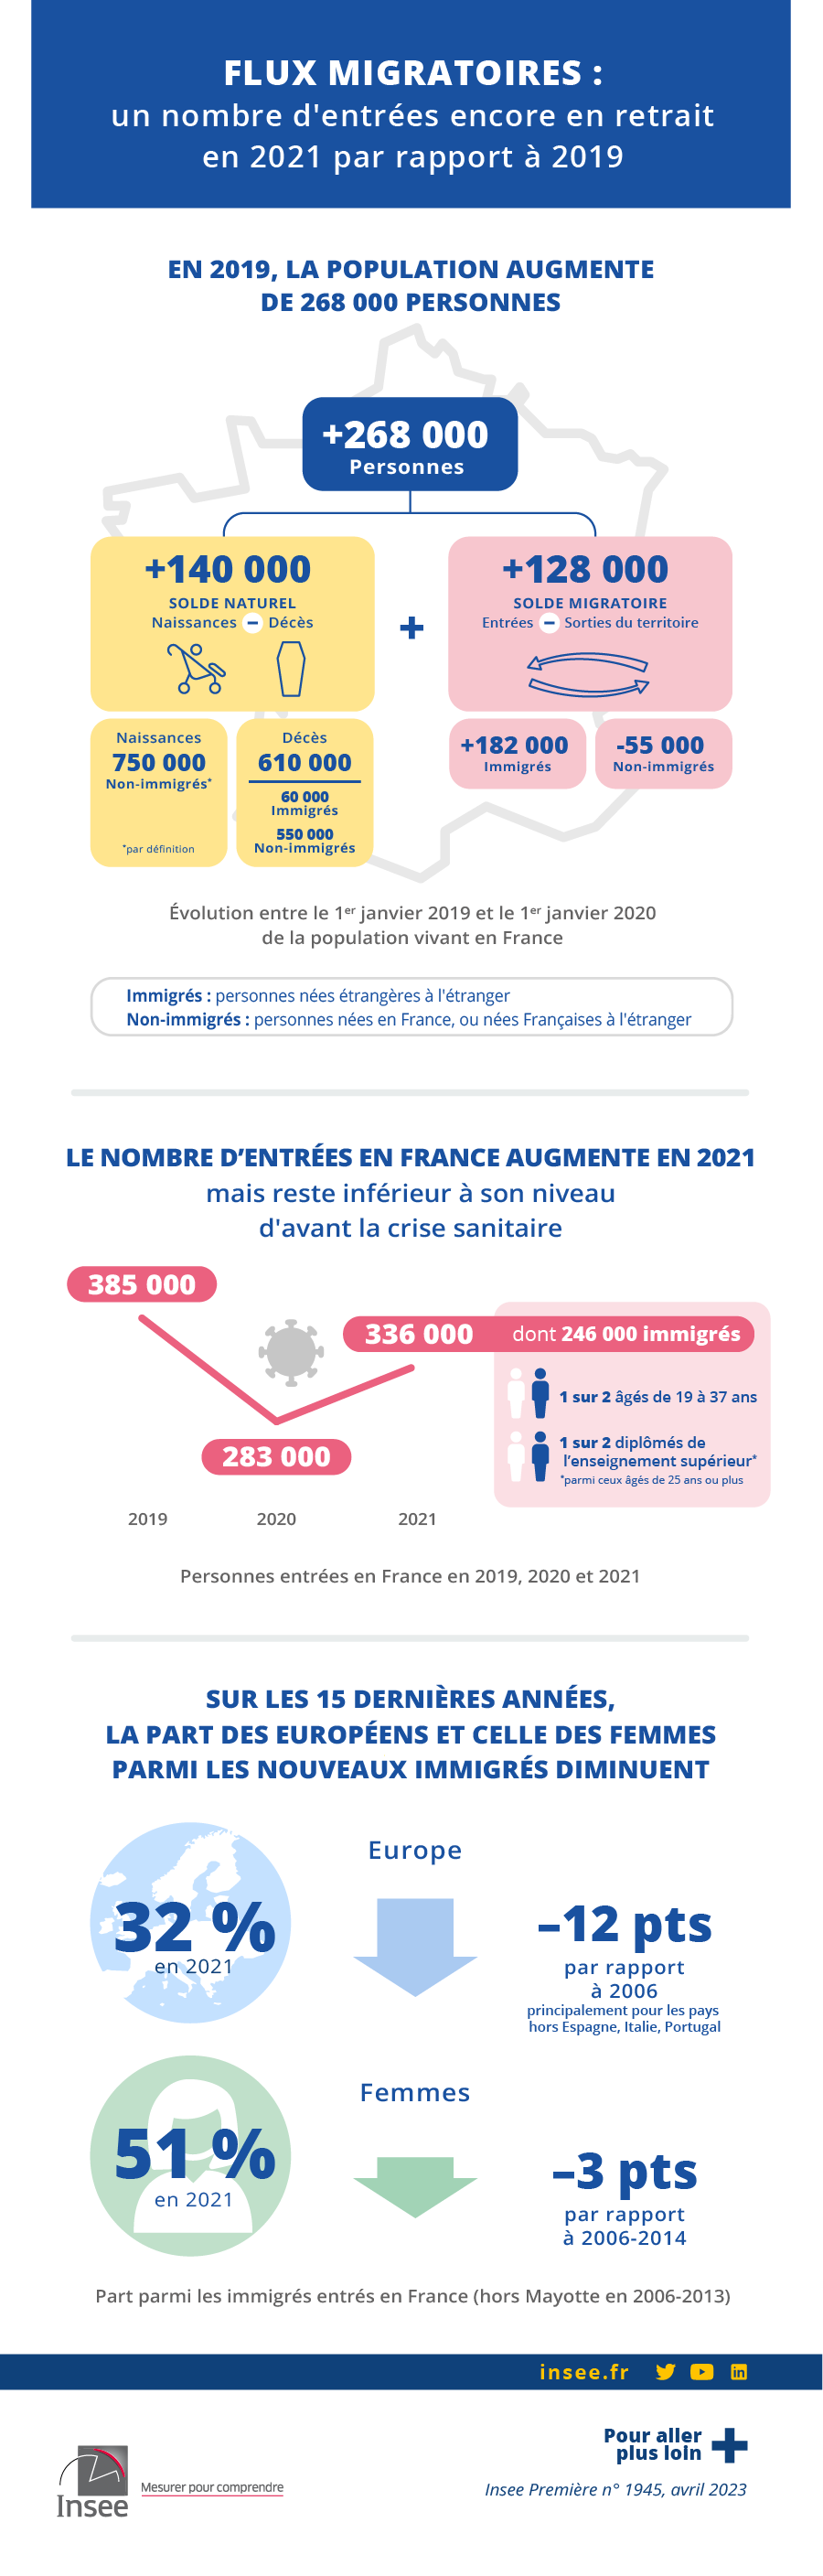 Insee - Flux migratoires : un nombre d’entrées en France encore en retrait en 2021 par rapport à 2019